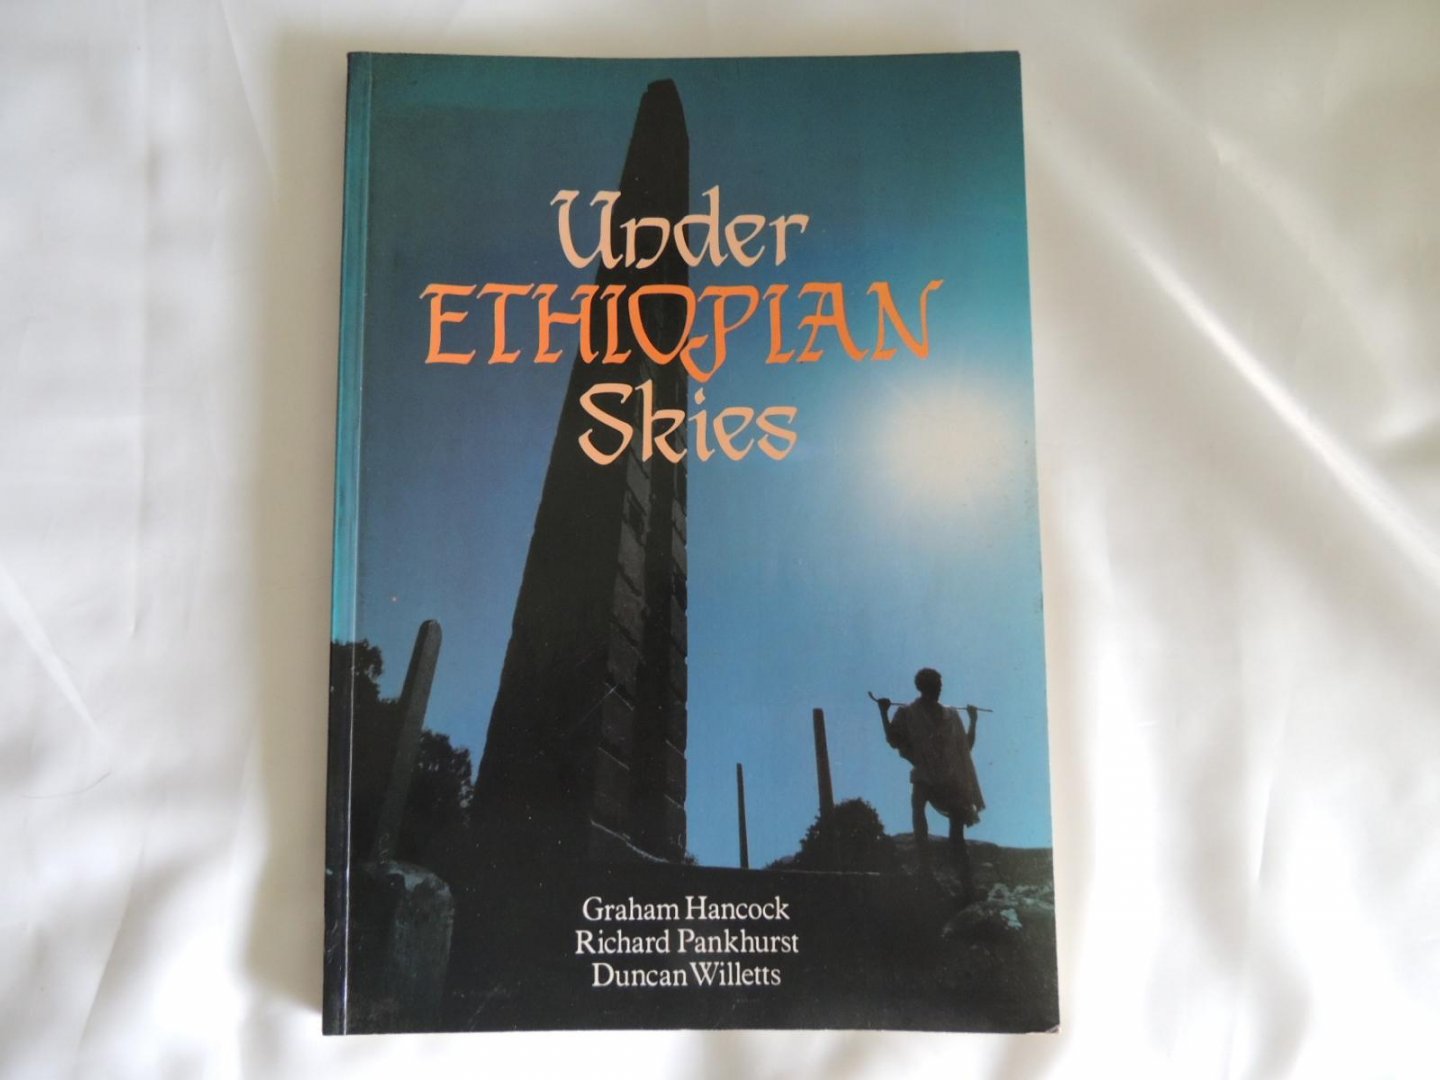 Graham Hancock; Richard Pankhurst; Duncan Willetts - Under Ethiopian skies